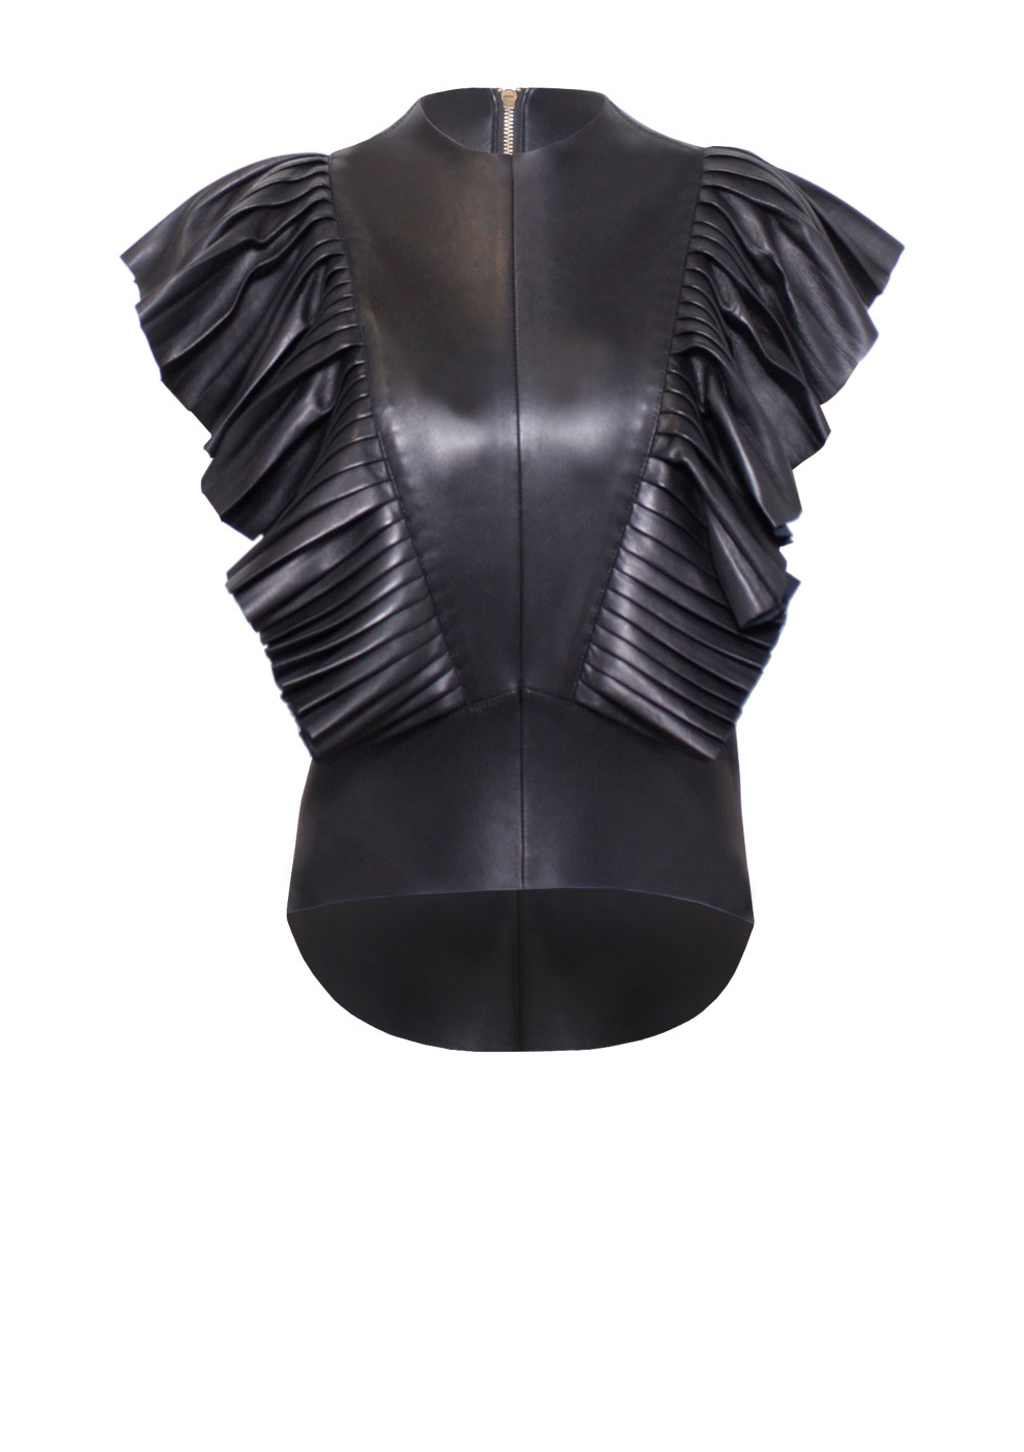 Leder Top mit Plissee-Ärmeln - Leder-Plissee-Bluse-, Ledertop, in Farbe schwarz, von Designer Stefan Eckert aus Hamburg-1